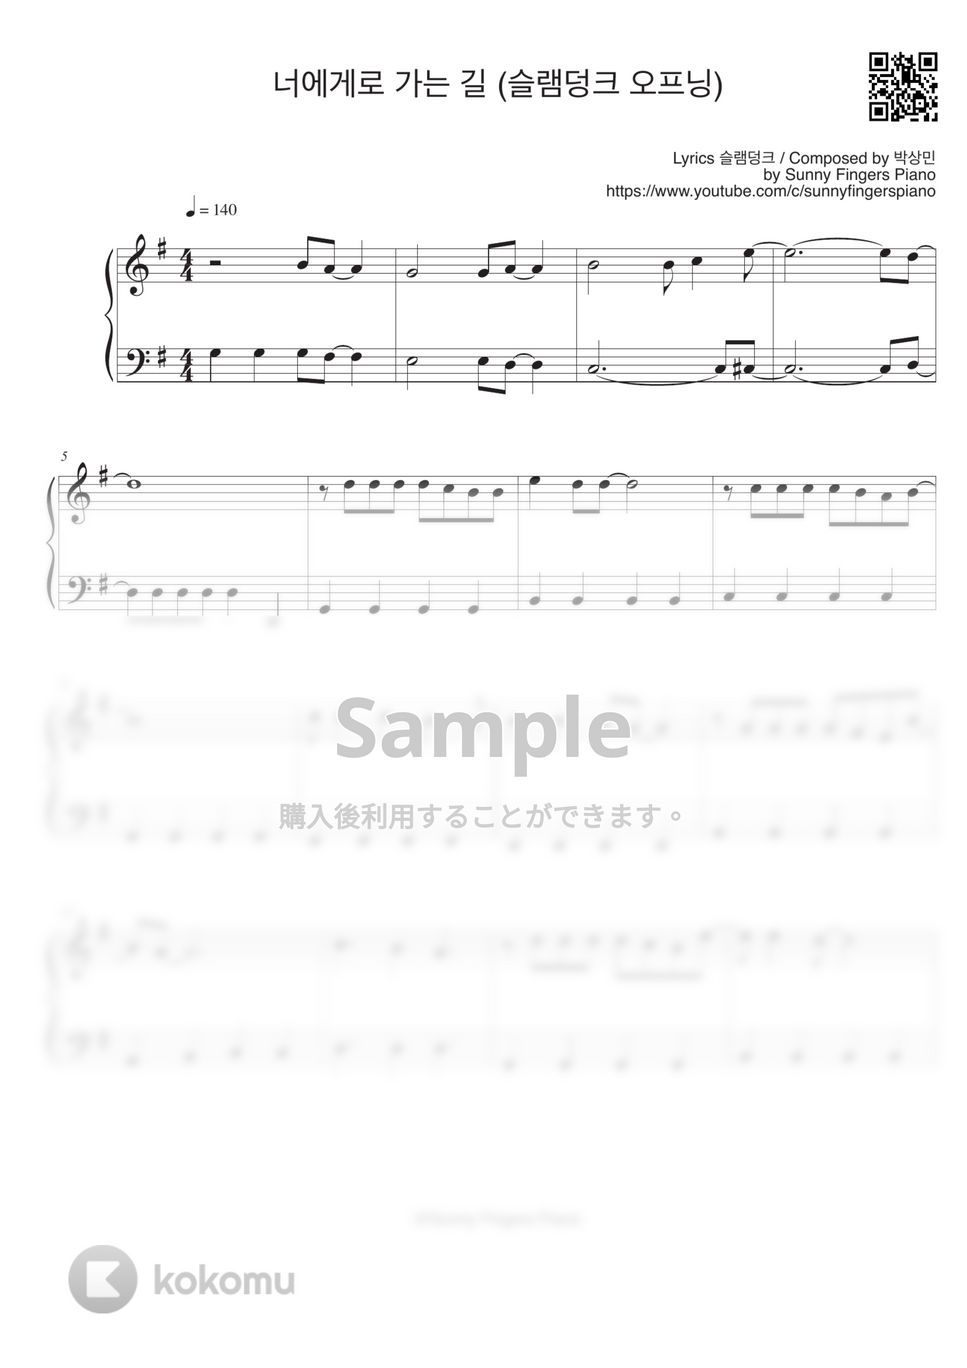 スラムダンク - Crazy for you (easy) by Sunny Fingers Piano